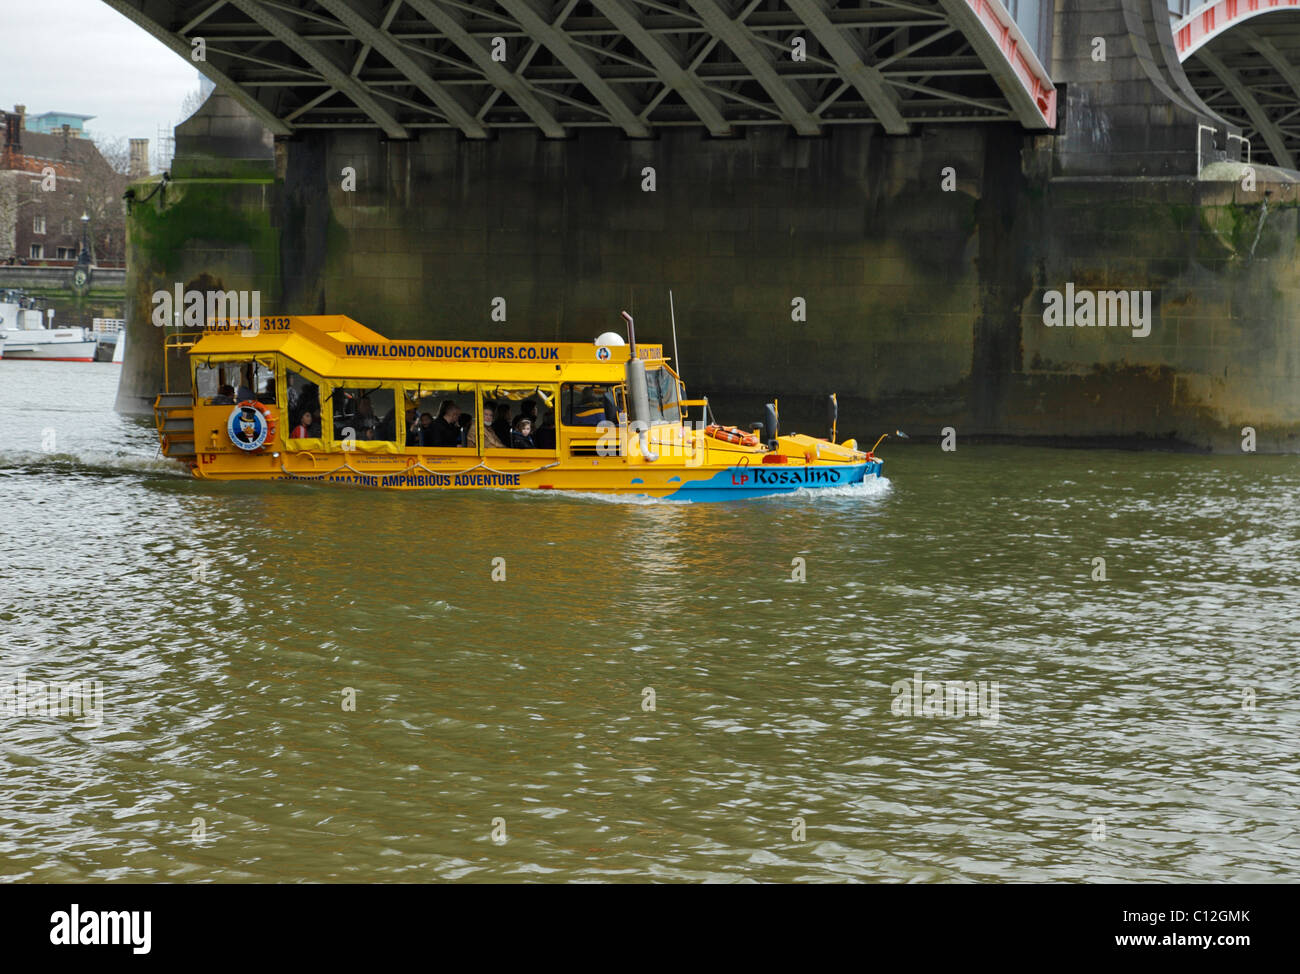 Duck Tours bateau amphibie en passant sous le pont de Lambeth, Londres. Banque D'Images